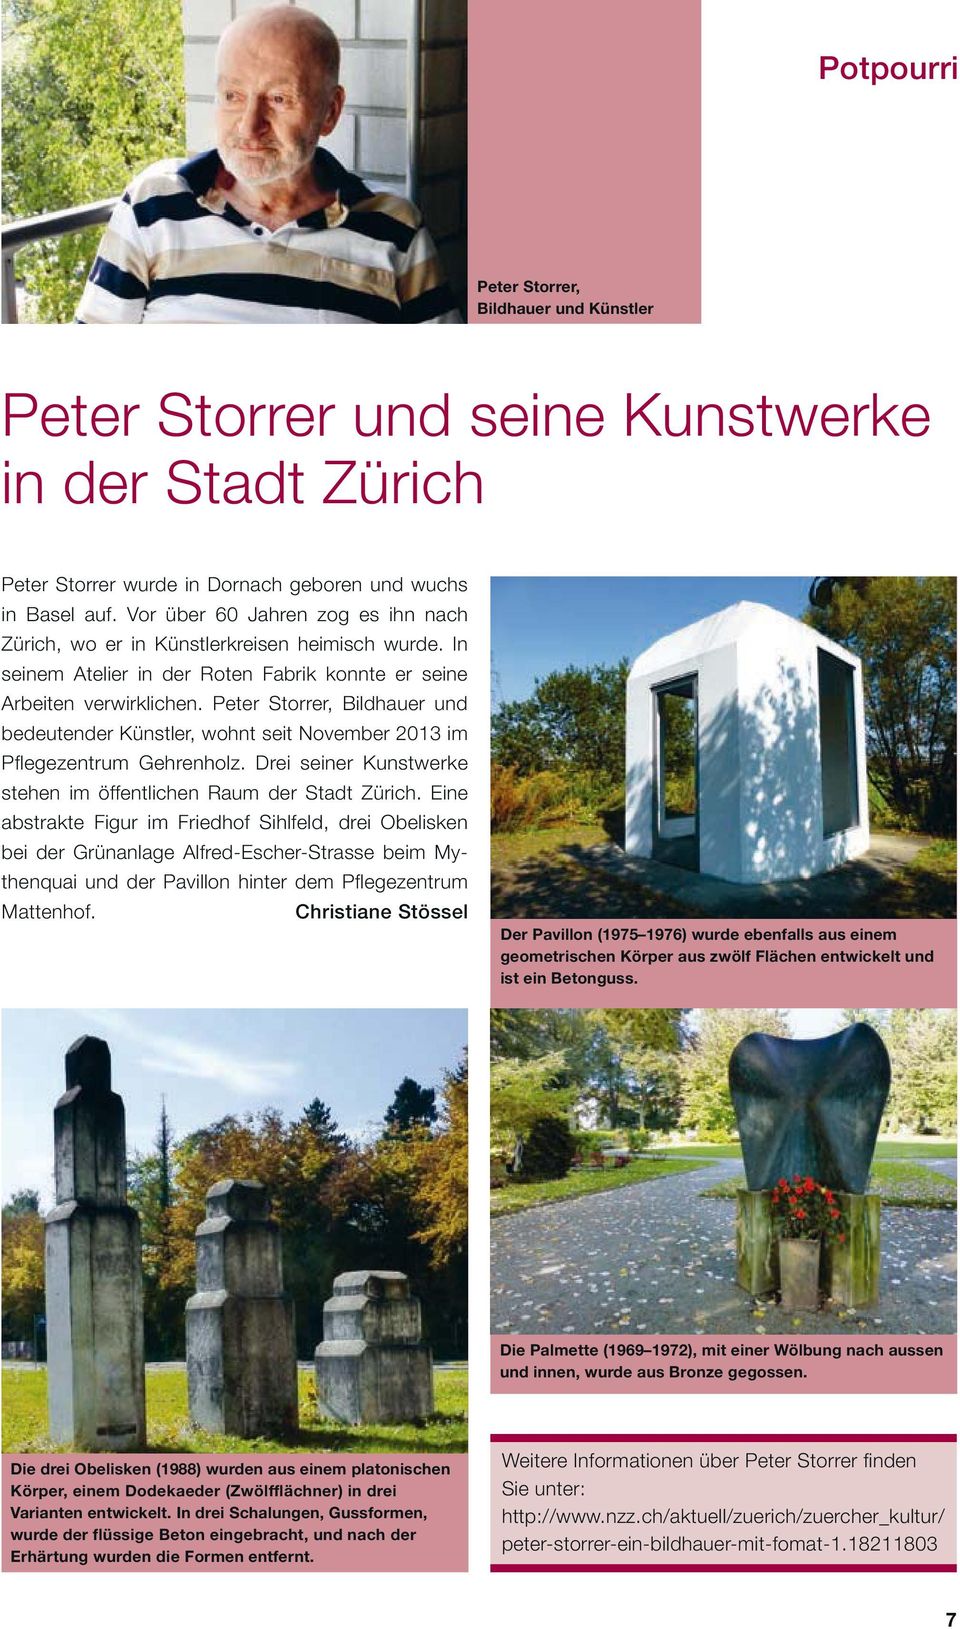 Peter Storrer, Bildhauer und bedeutender Künstler, wohnt seit November 2013 im Pflegezentrum Gehrenholz. Drei seiner Kunstwerke stehen im öffentlichen Raum der Stadt Zürich.